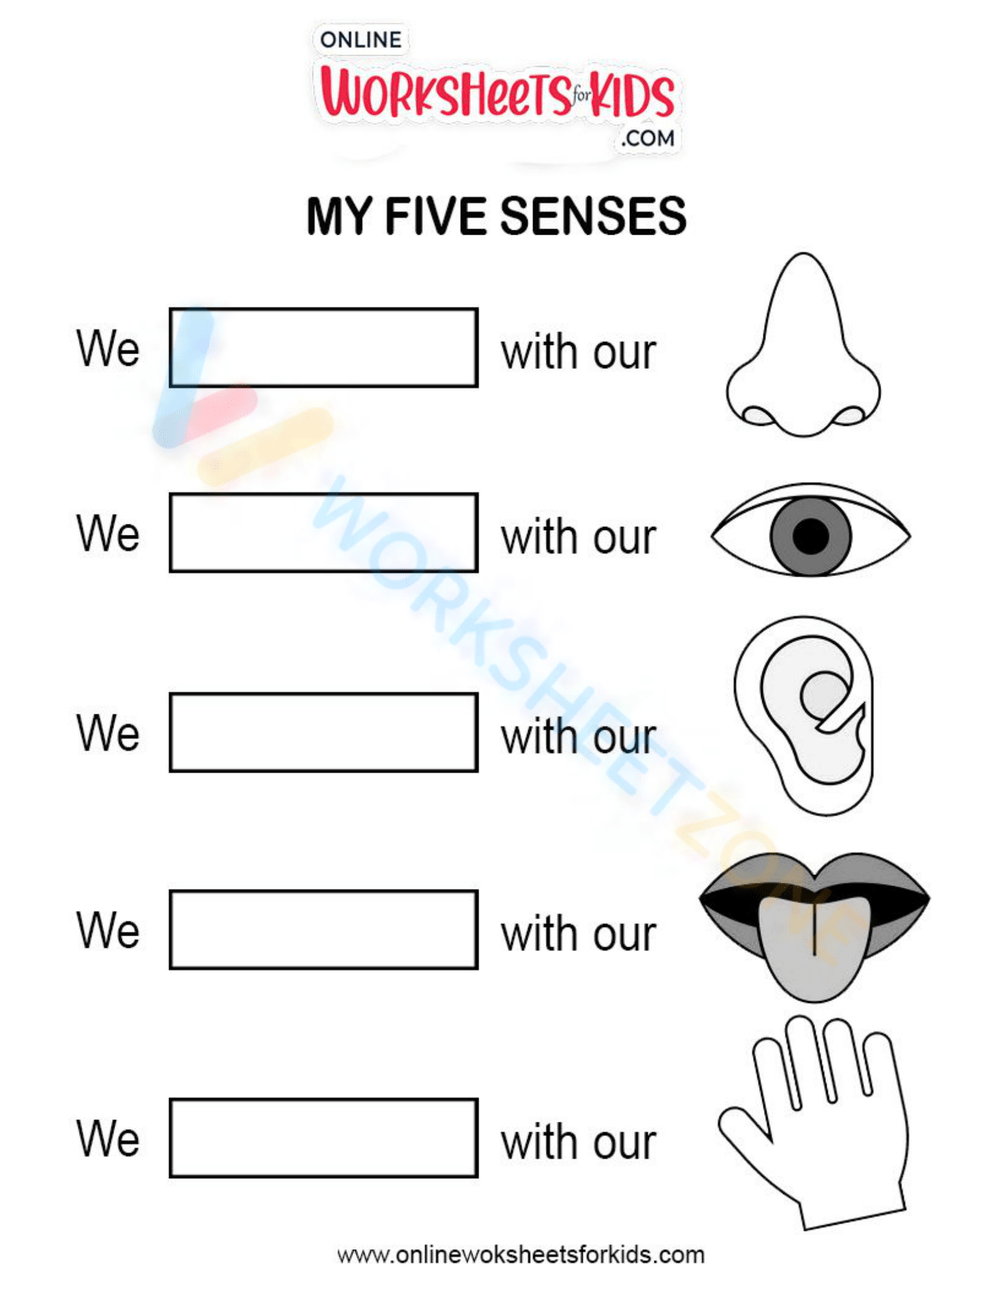 5 sense - 1